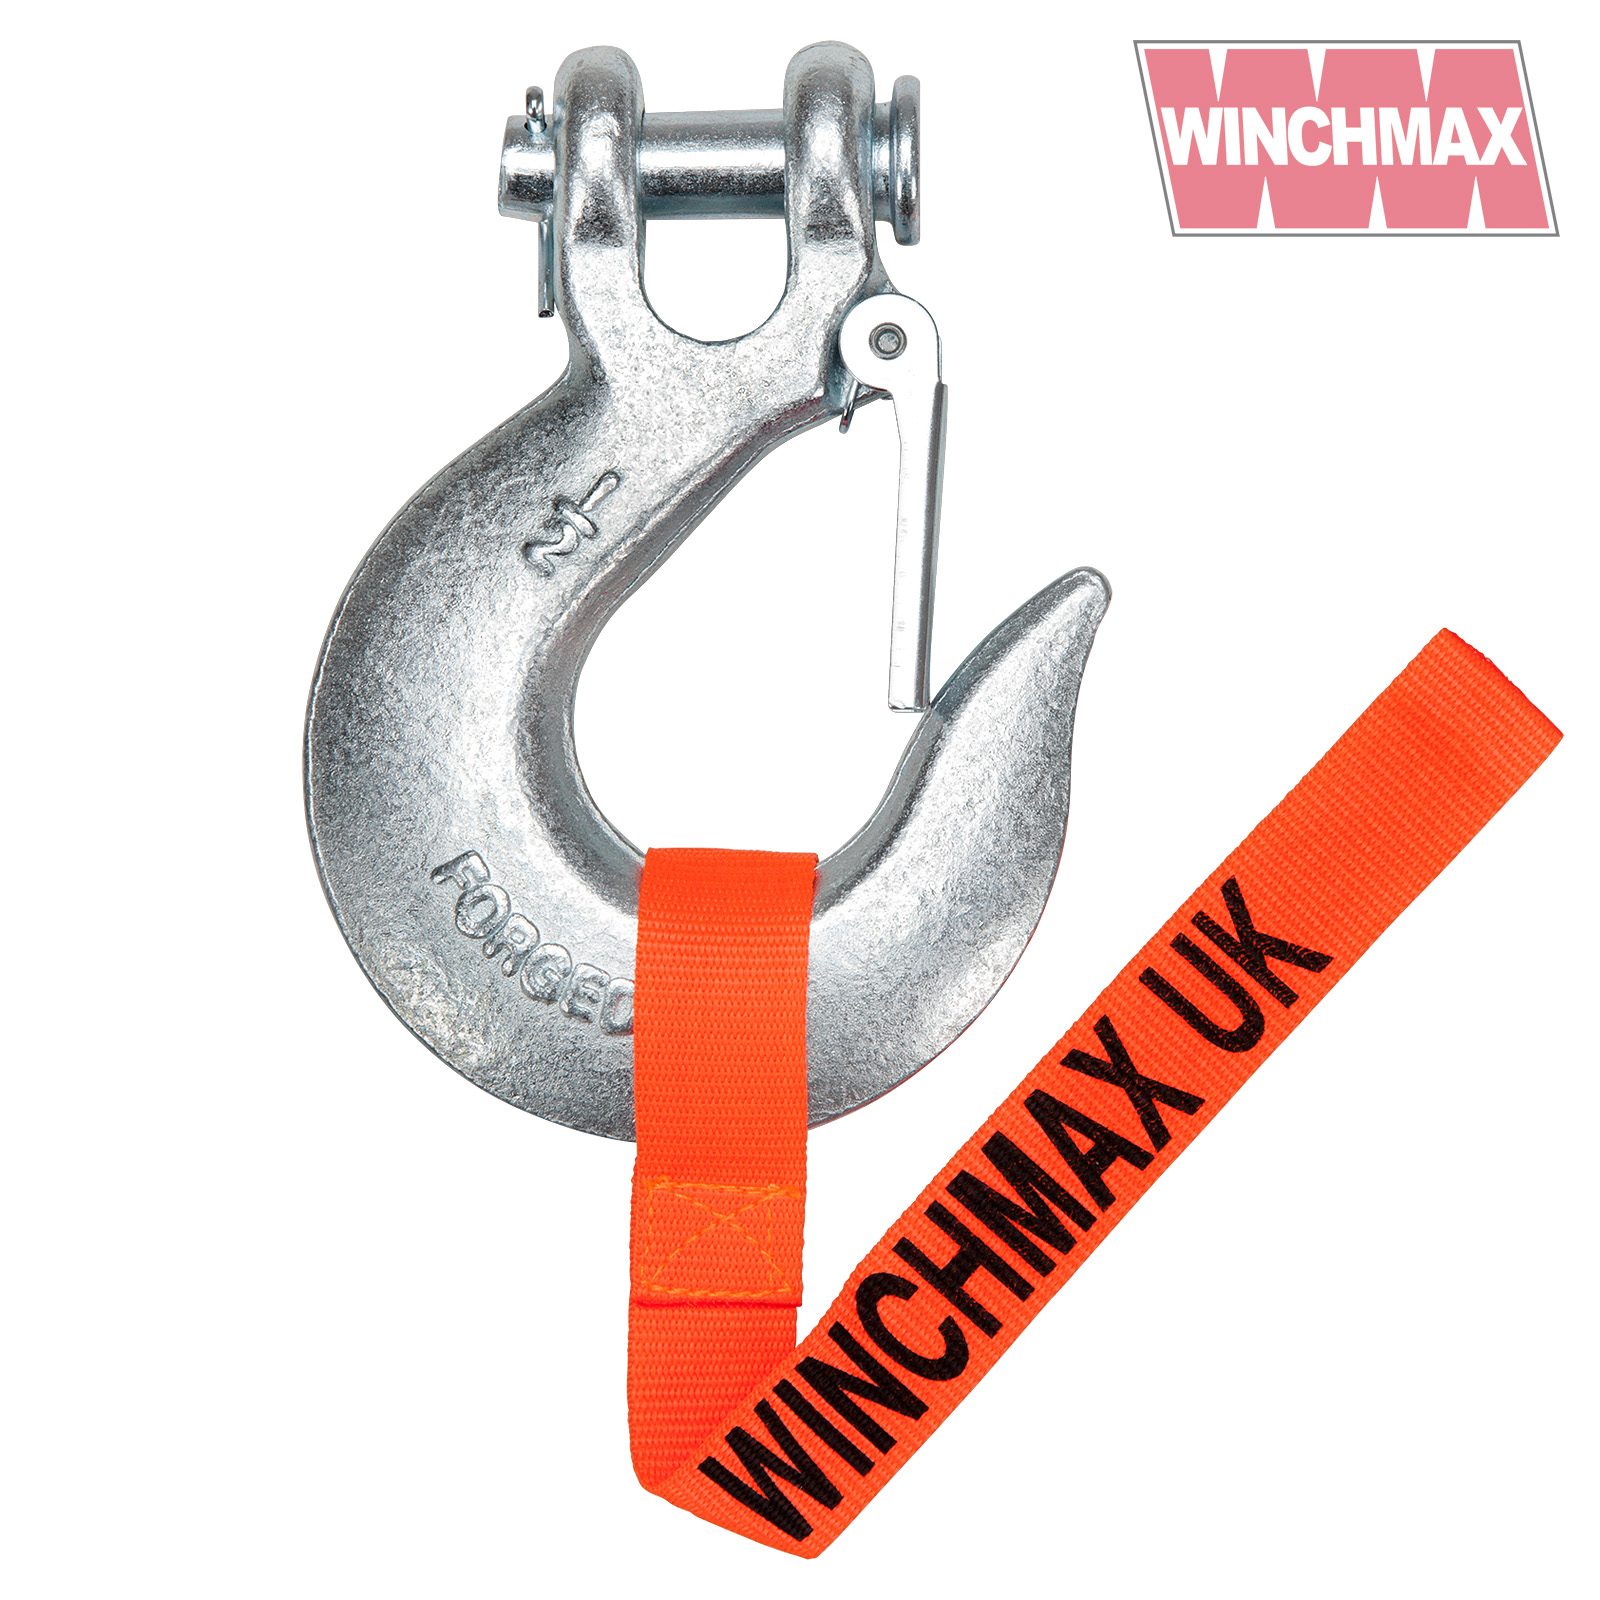 https://www.winchmax.co.uk/wp-content/uploads/2021/12/WMHK12.jpg